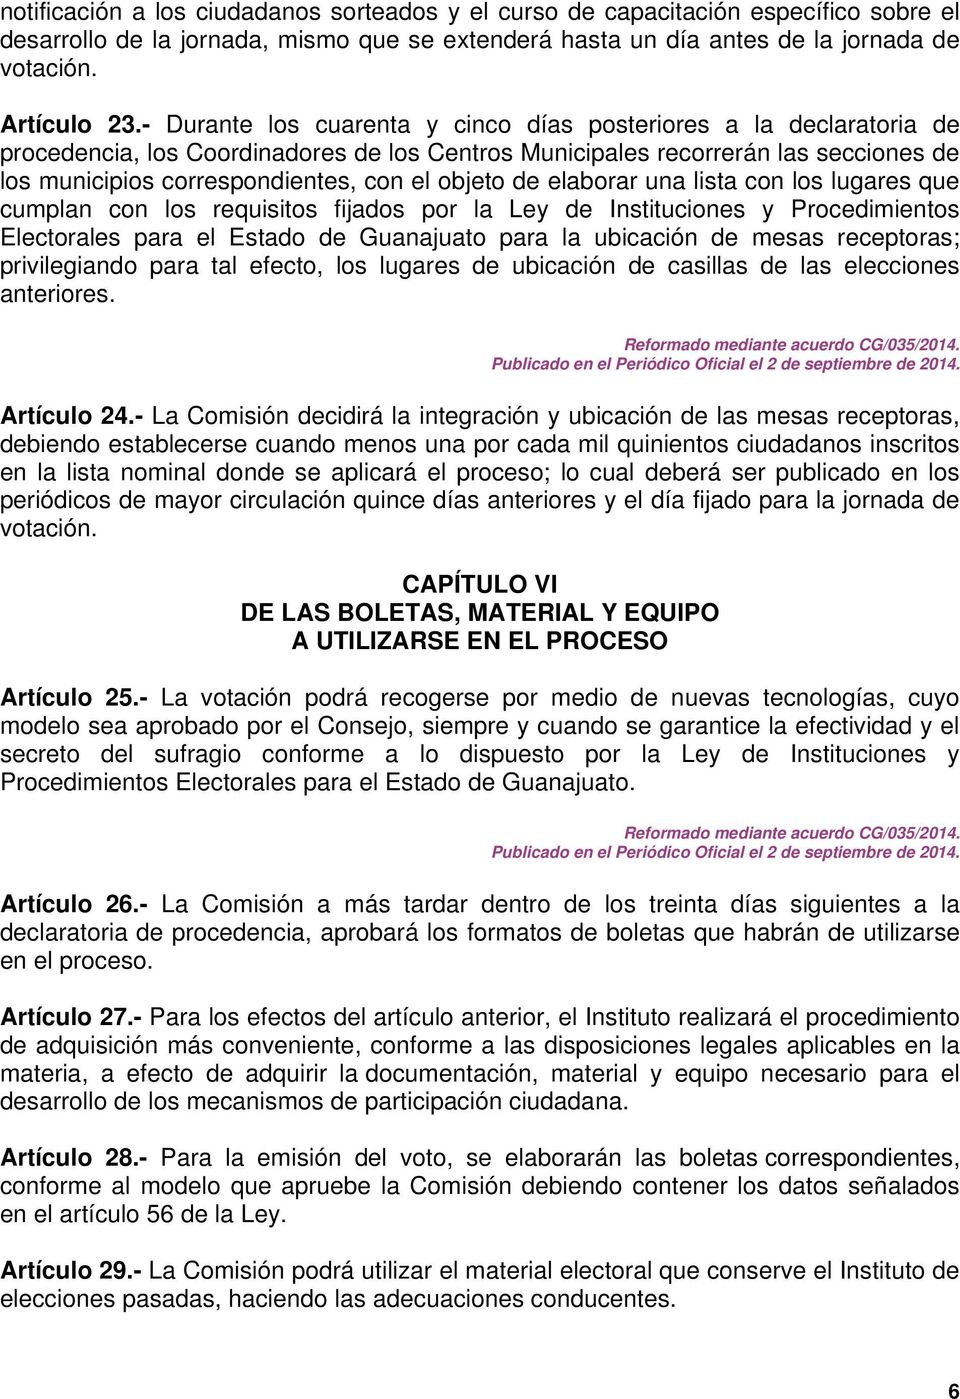 objeto de elaborar una lista con los lugares que cumplan con los requisitos fijados por la Ley de Instituciones y Procedimientos Electorales para el Estado de Guanajuato para la ubicación de mesas